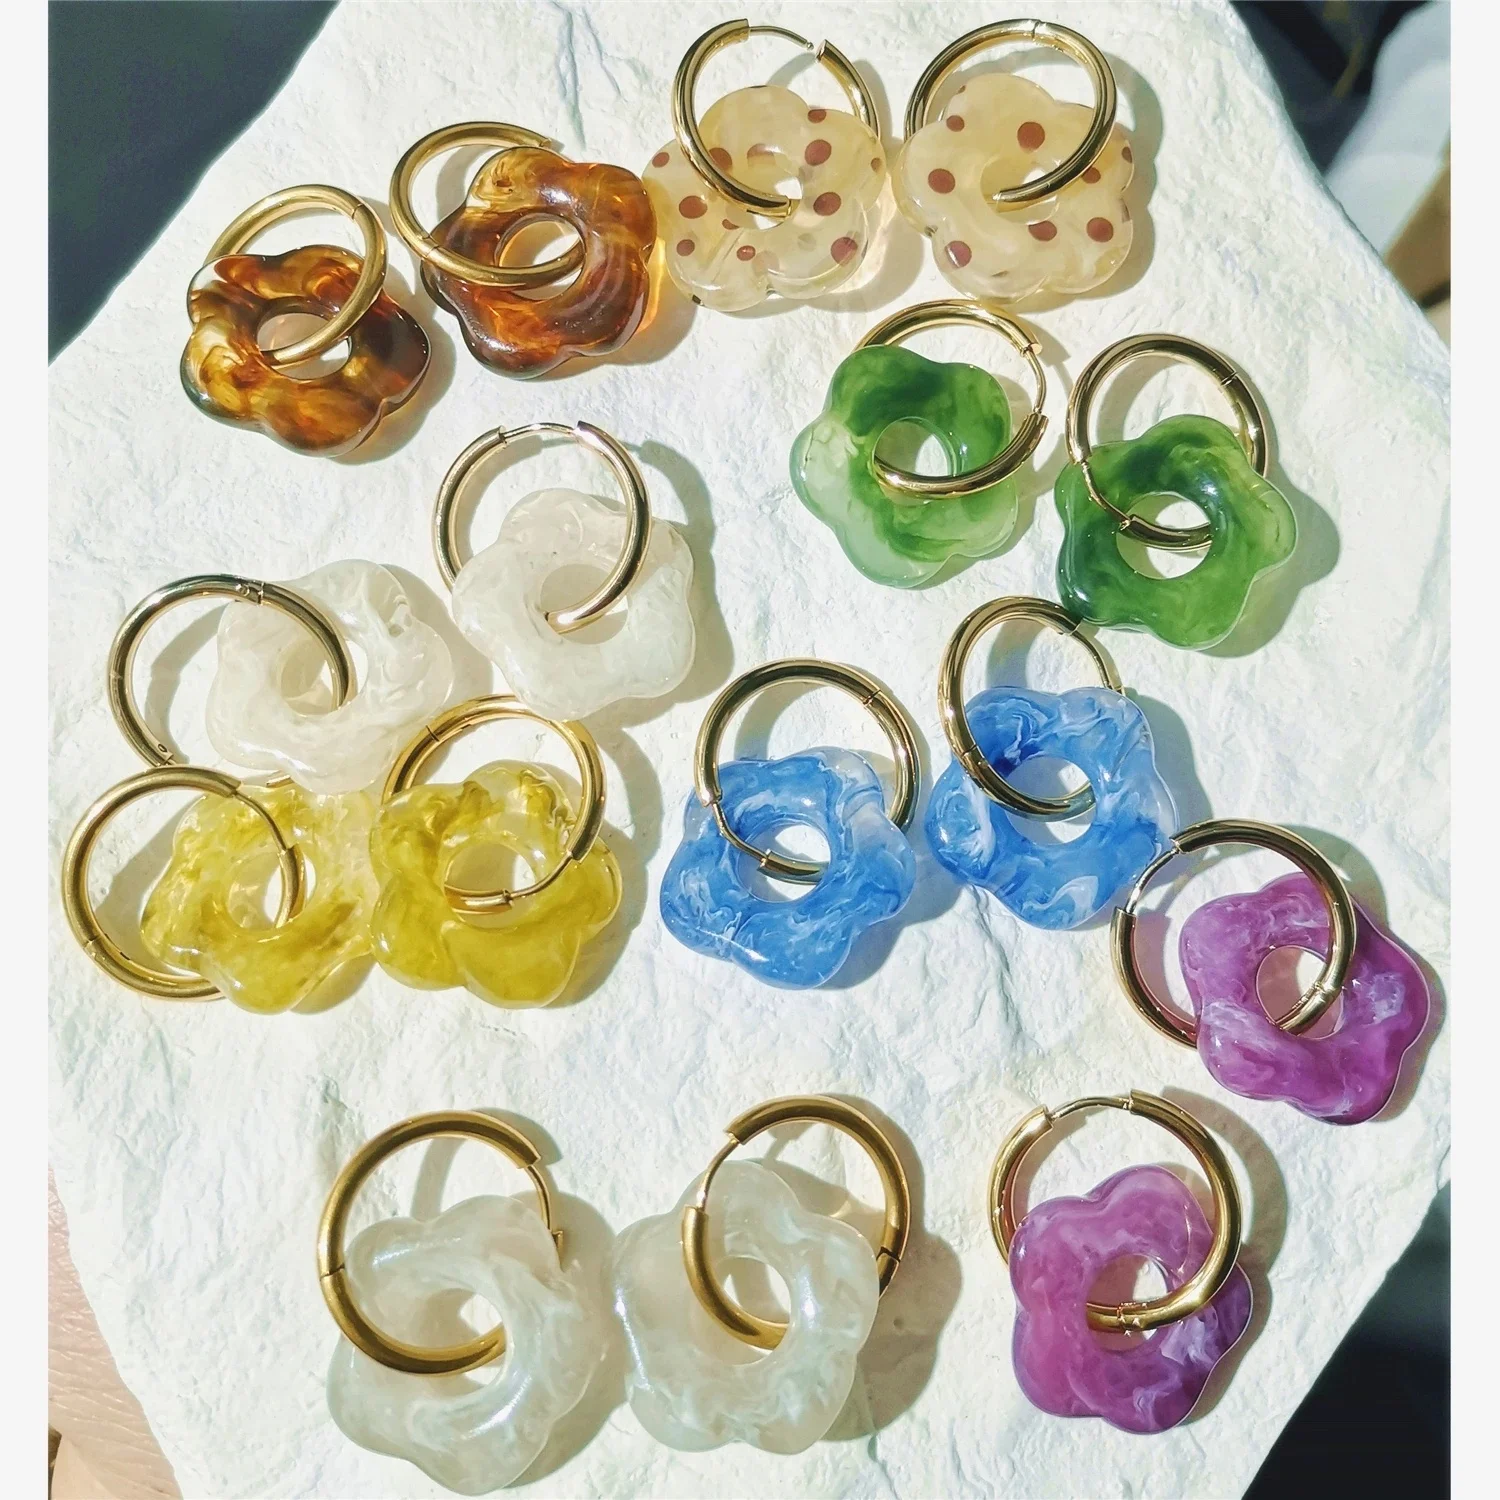 Resin Hoops Earrings at Rs 90/pair in Kotdwara | ID: 2851066712855